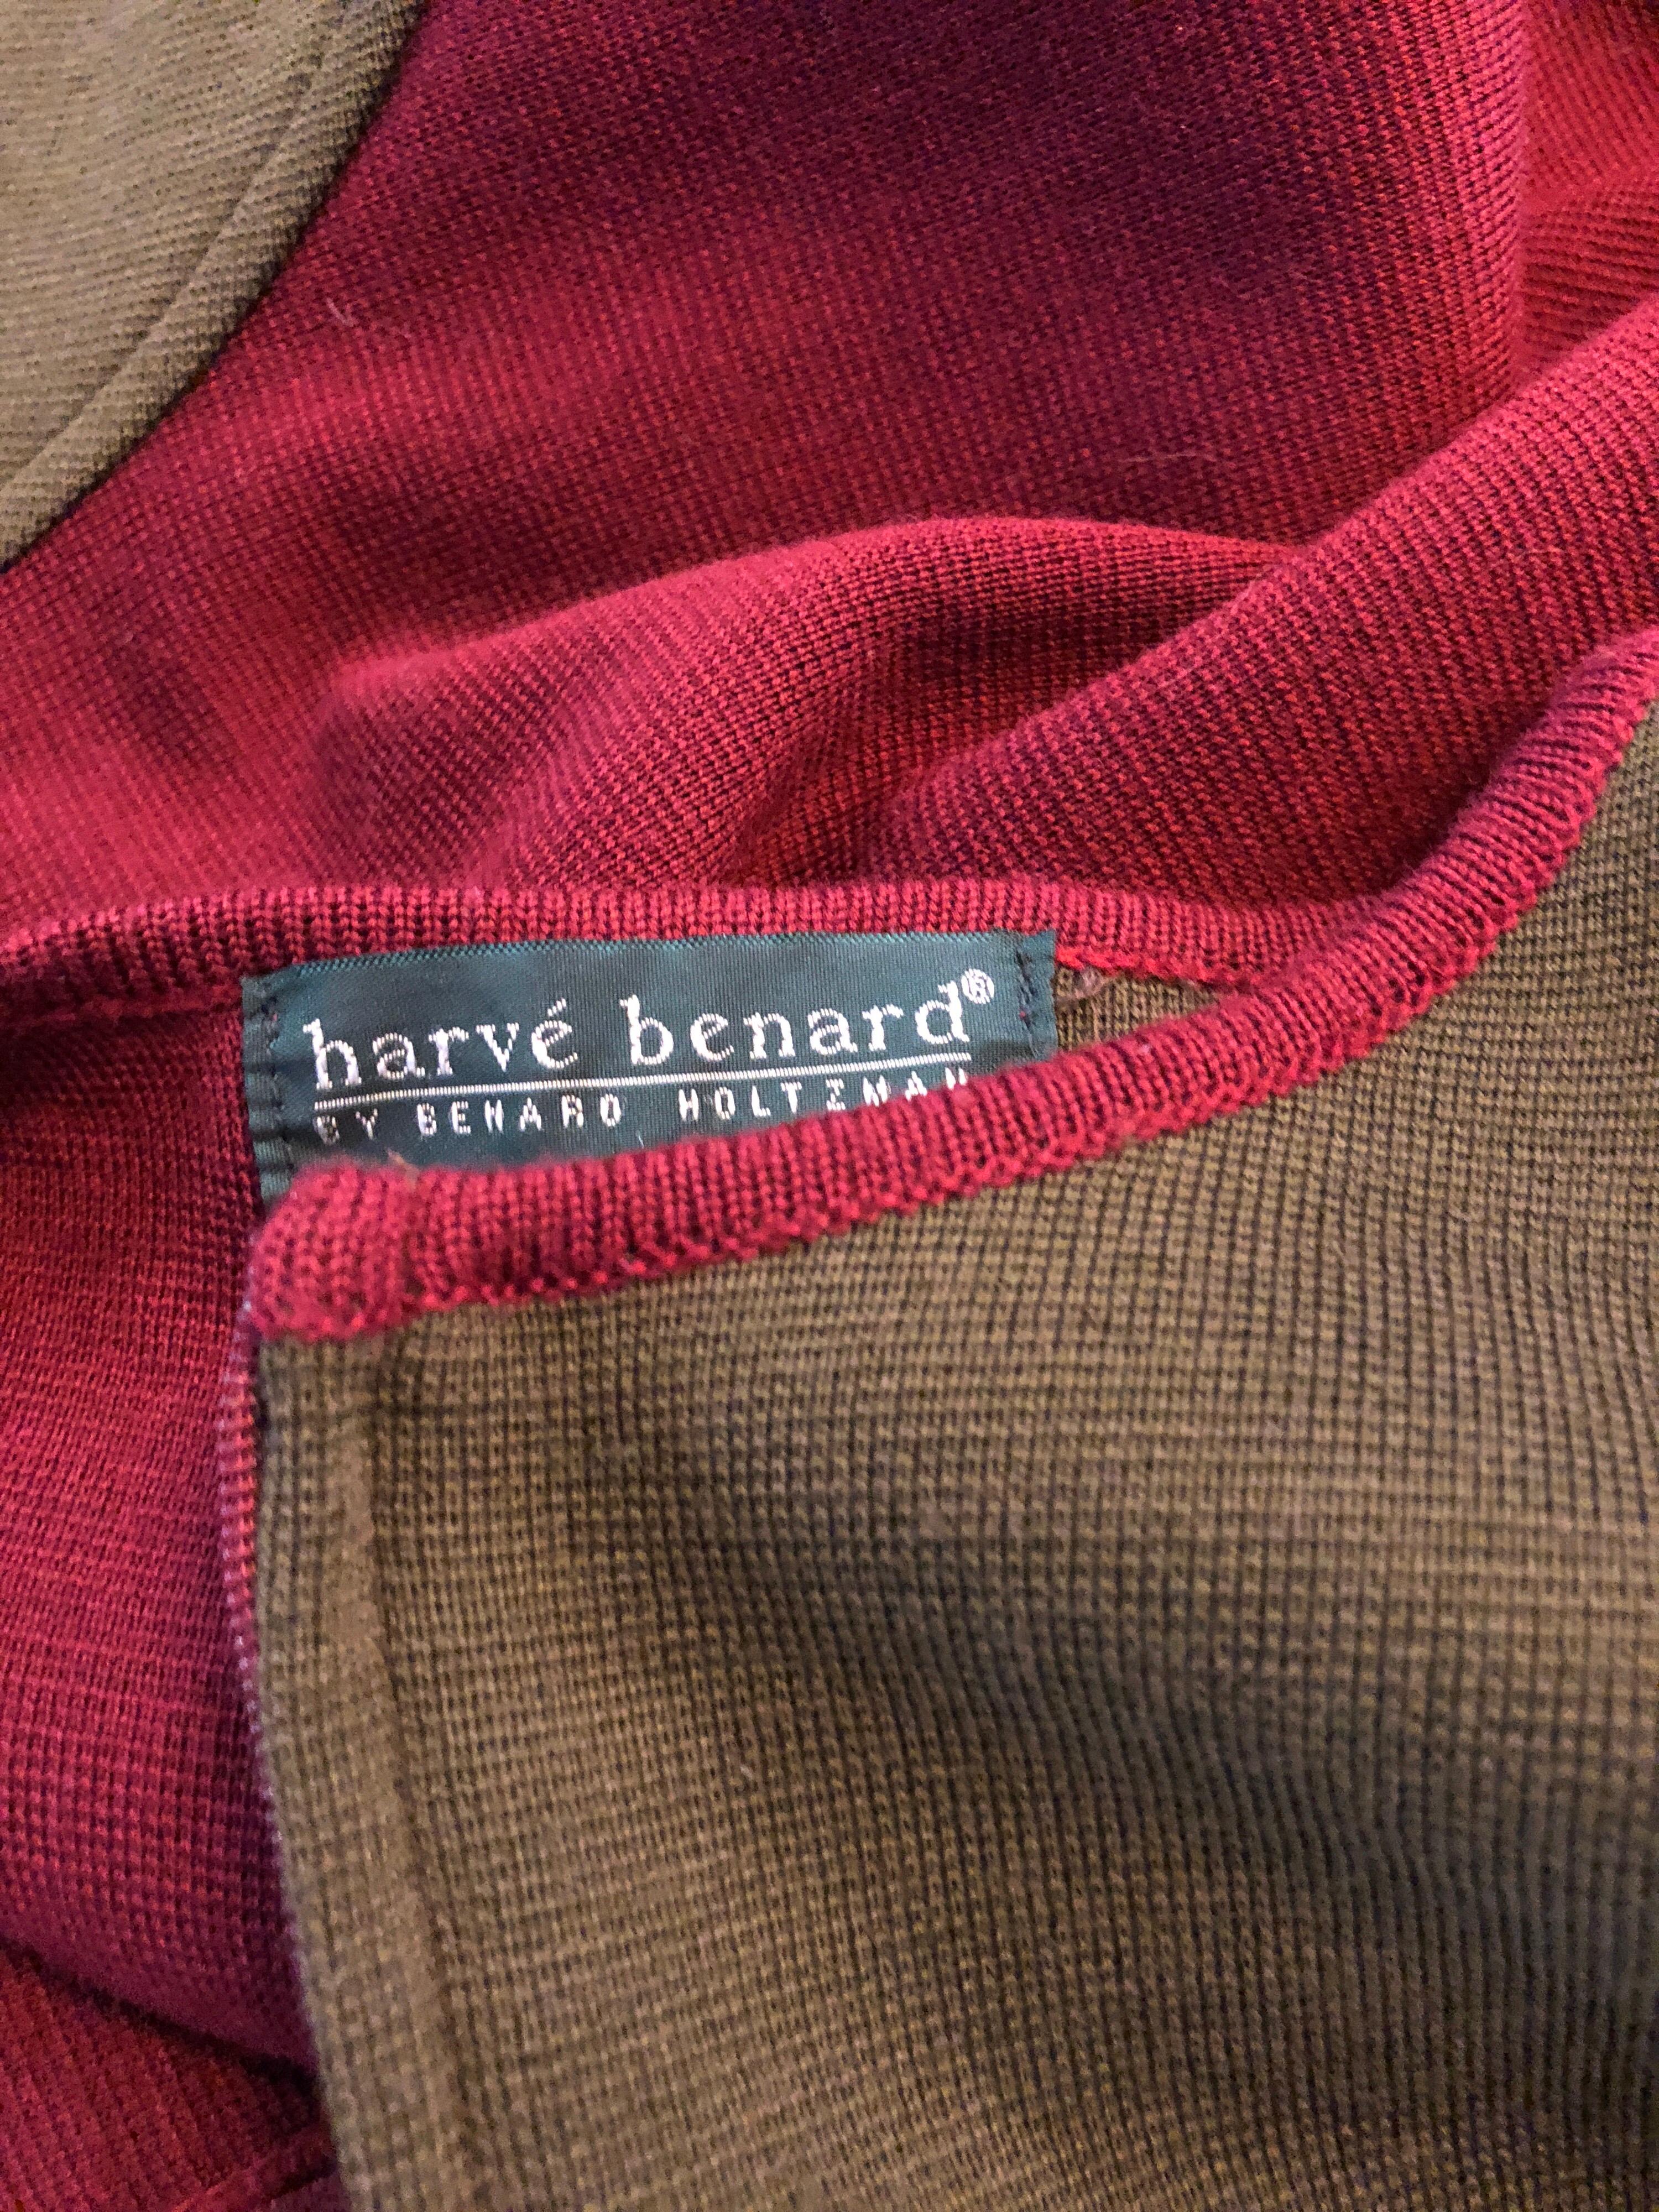 Vintage Harve Benard 1960s Style Maroon Burgundy + Brown Knit Wool Swing Dress For Sale 8